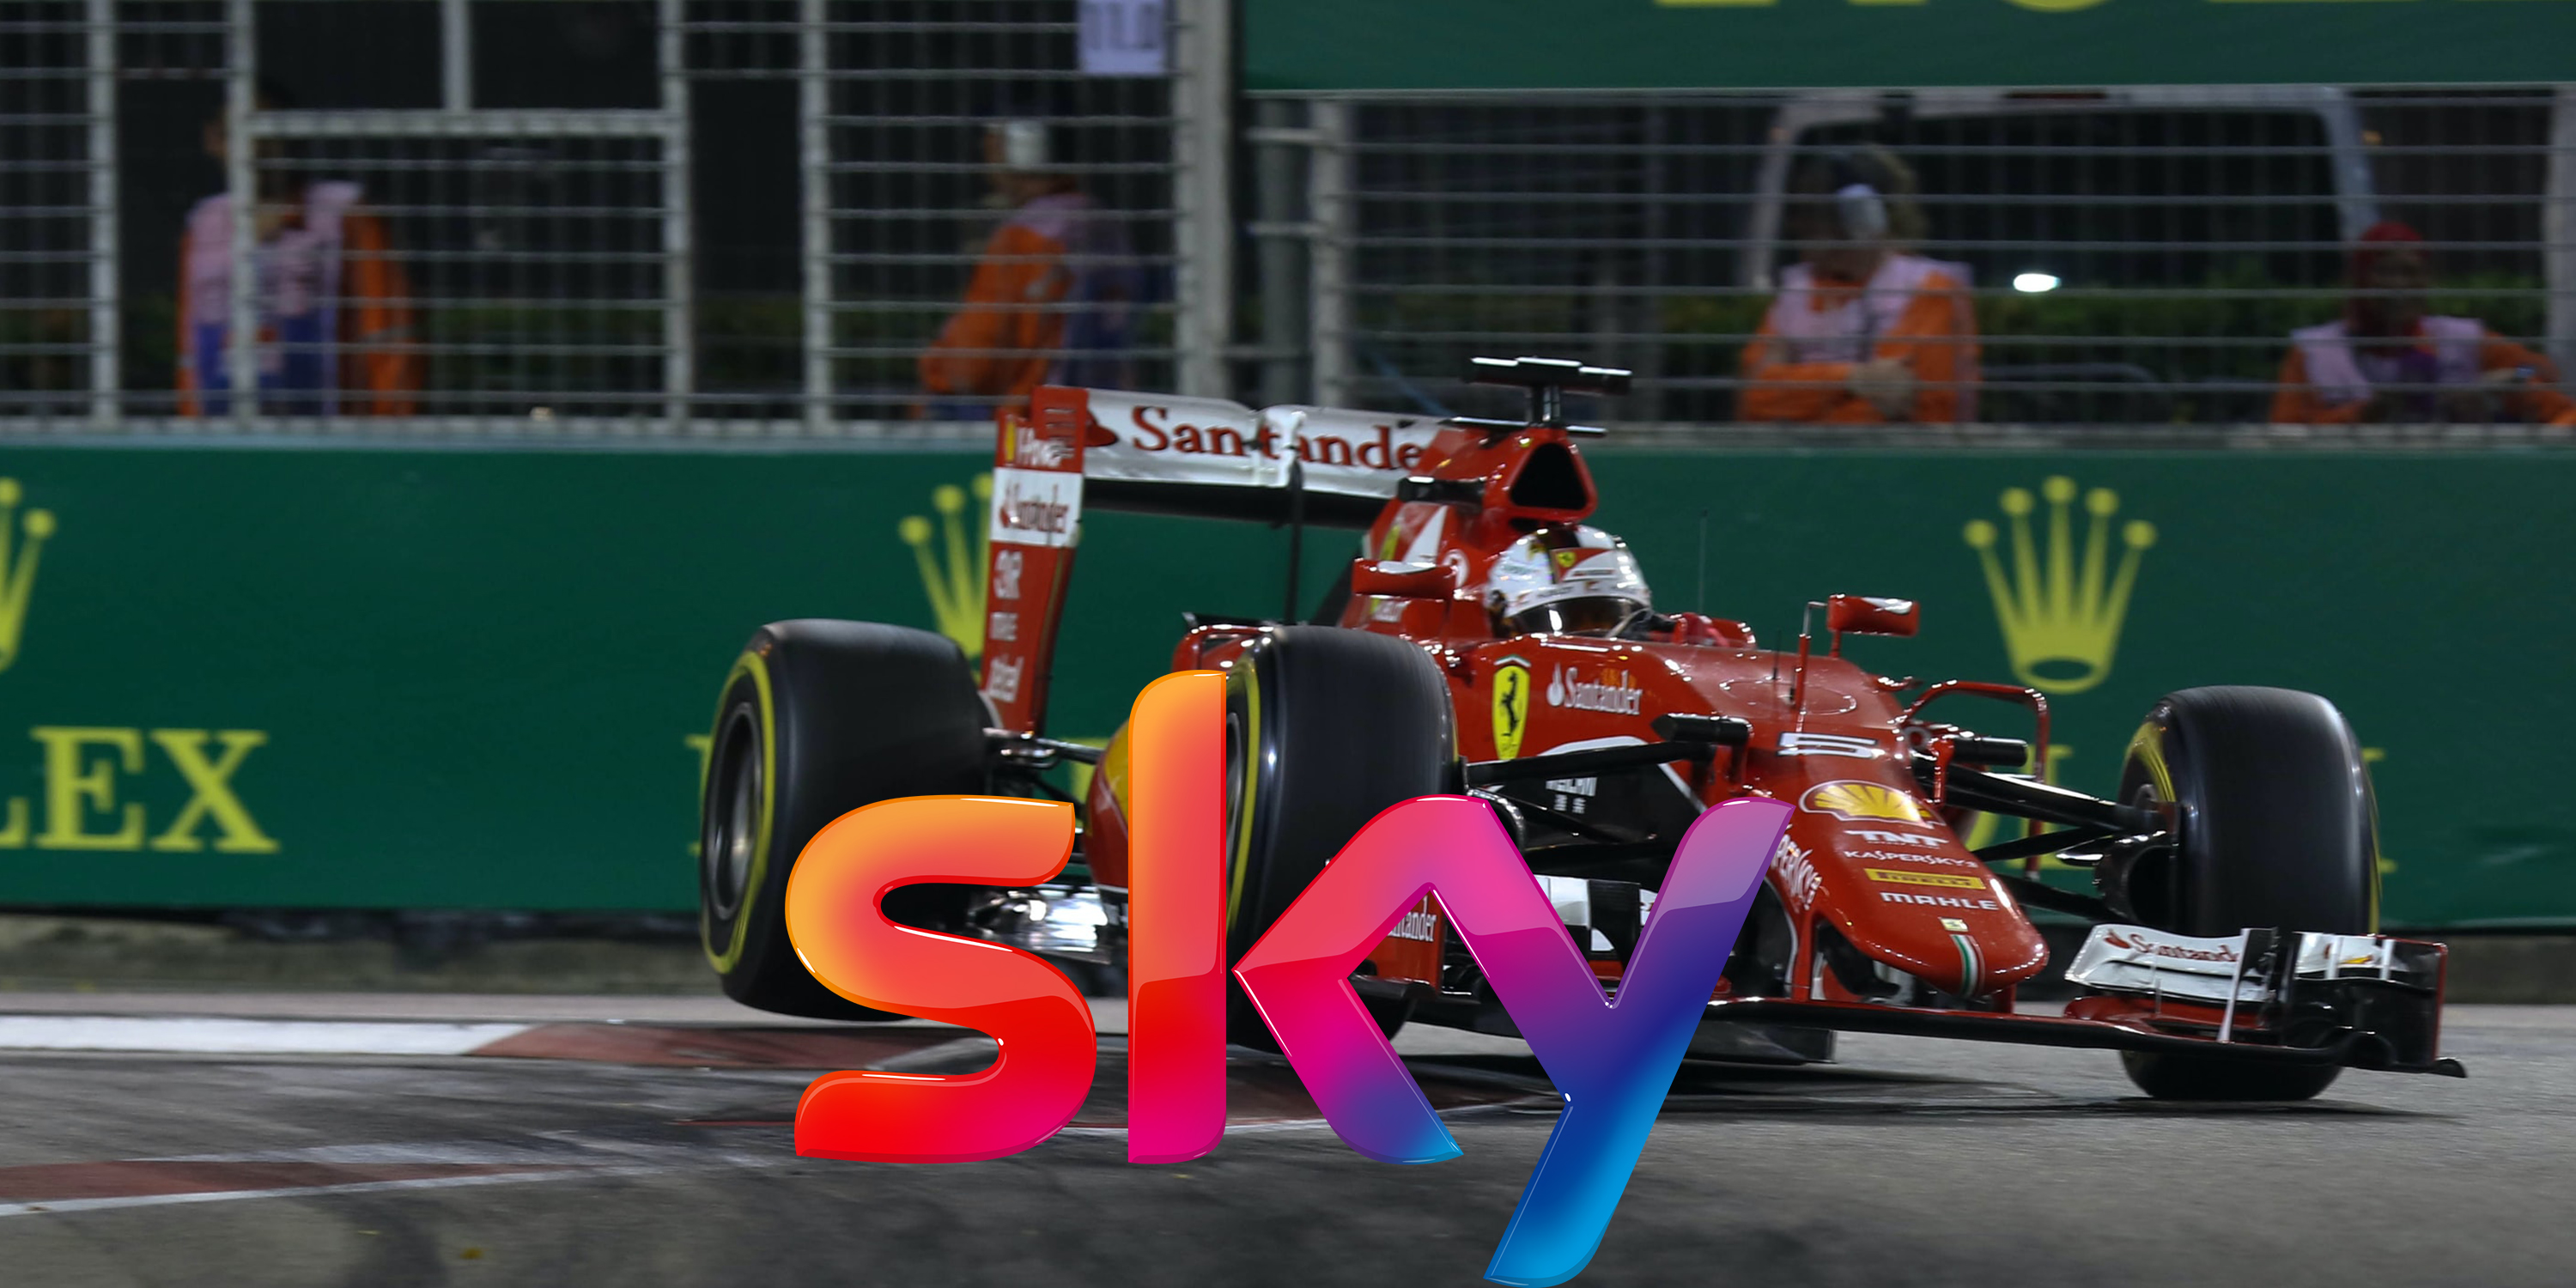 Formel 1 Live im TV und Online im Stream gucken